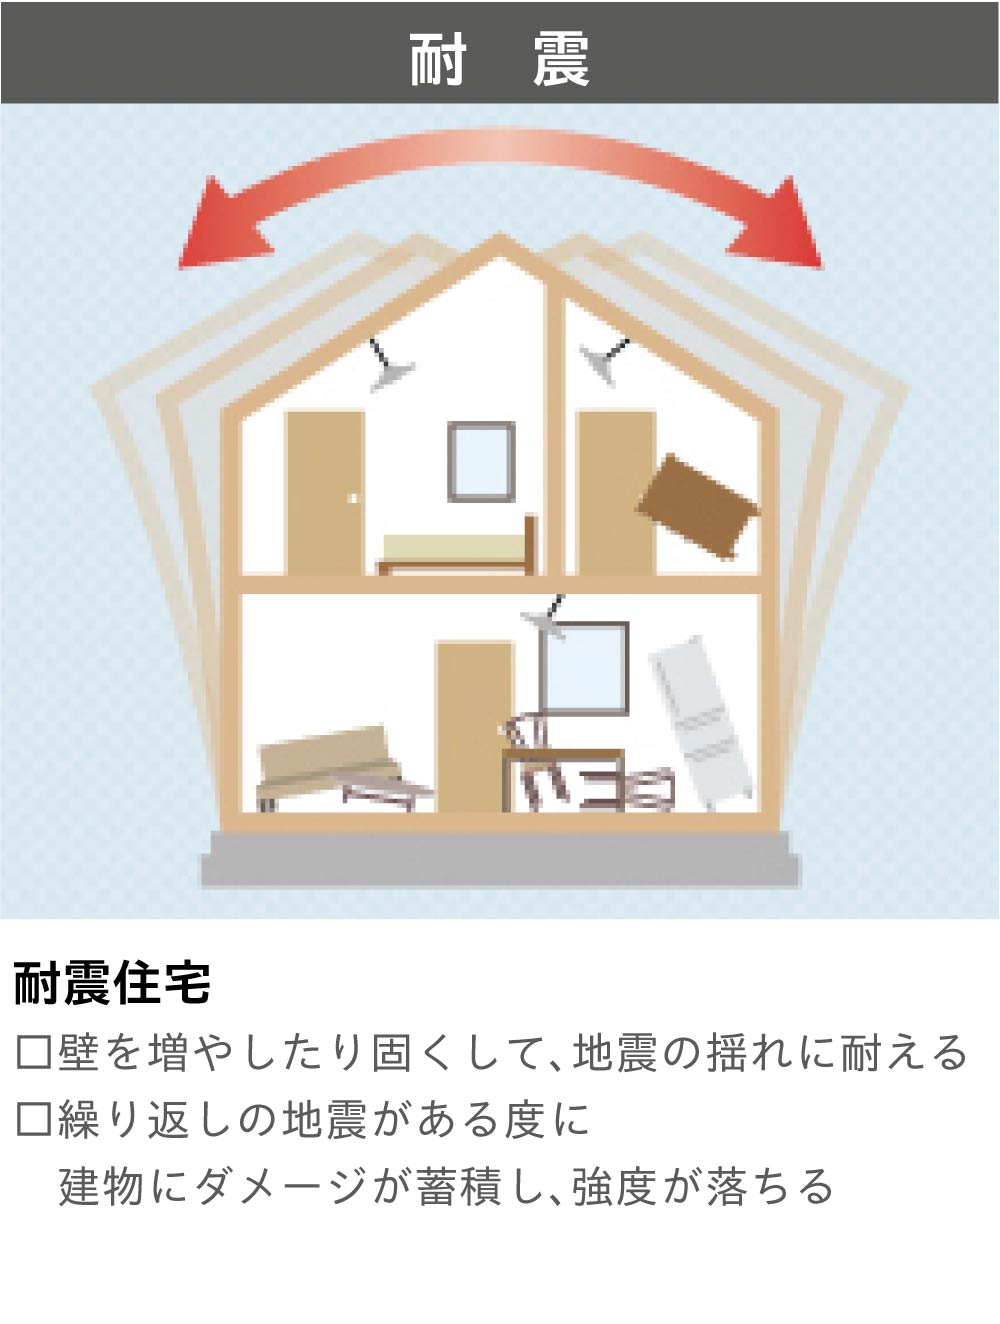 耐震住宅では壁を増やしたり固くして、地震の揺れに耐える構造。繰り返しの地震がある度に建物にダメージが蓄積し、強度が落ちる